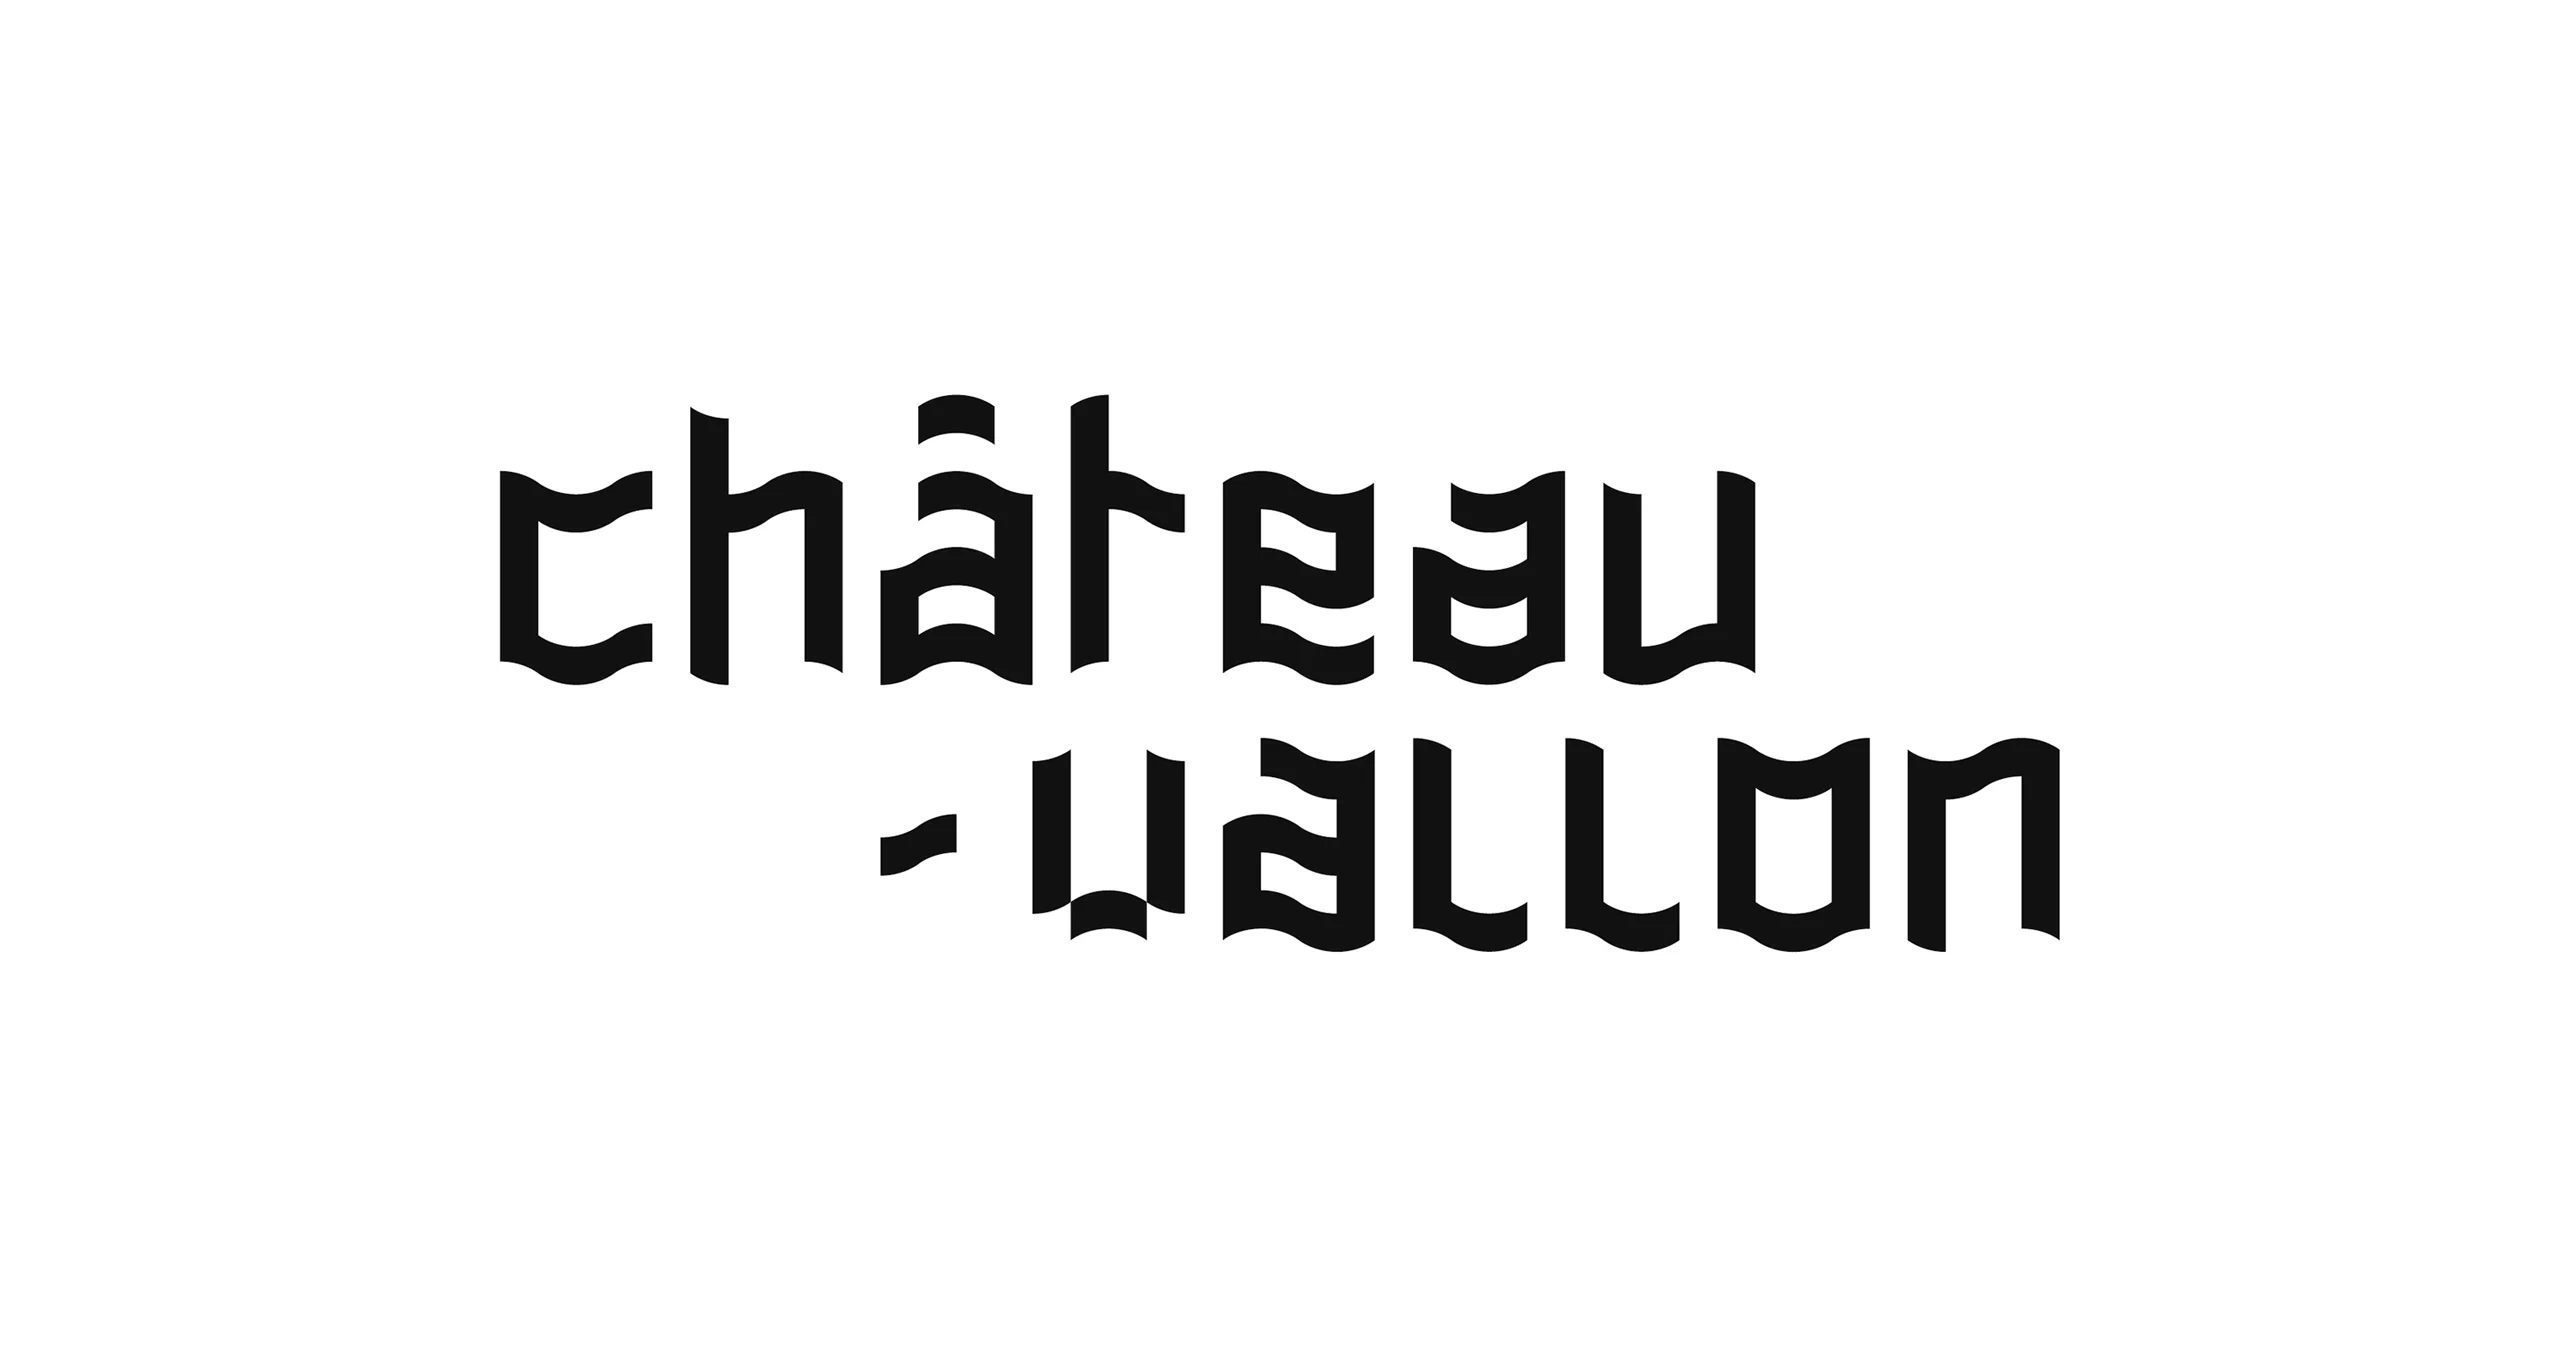 Logotype Châteauvallon composé d'une typographie qui ondule